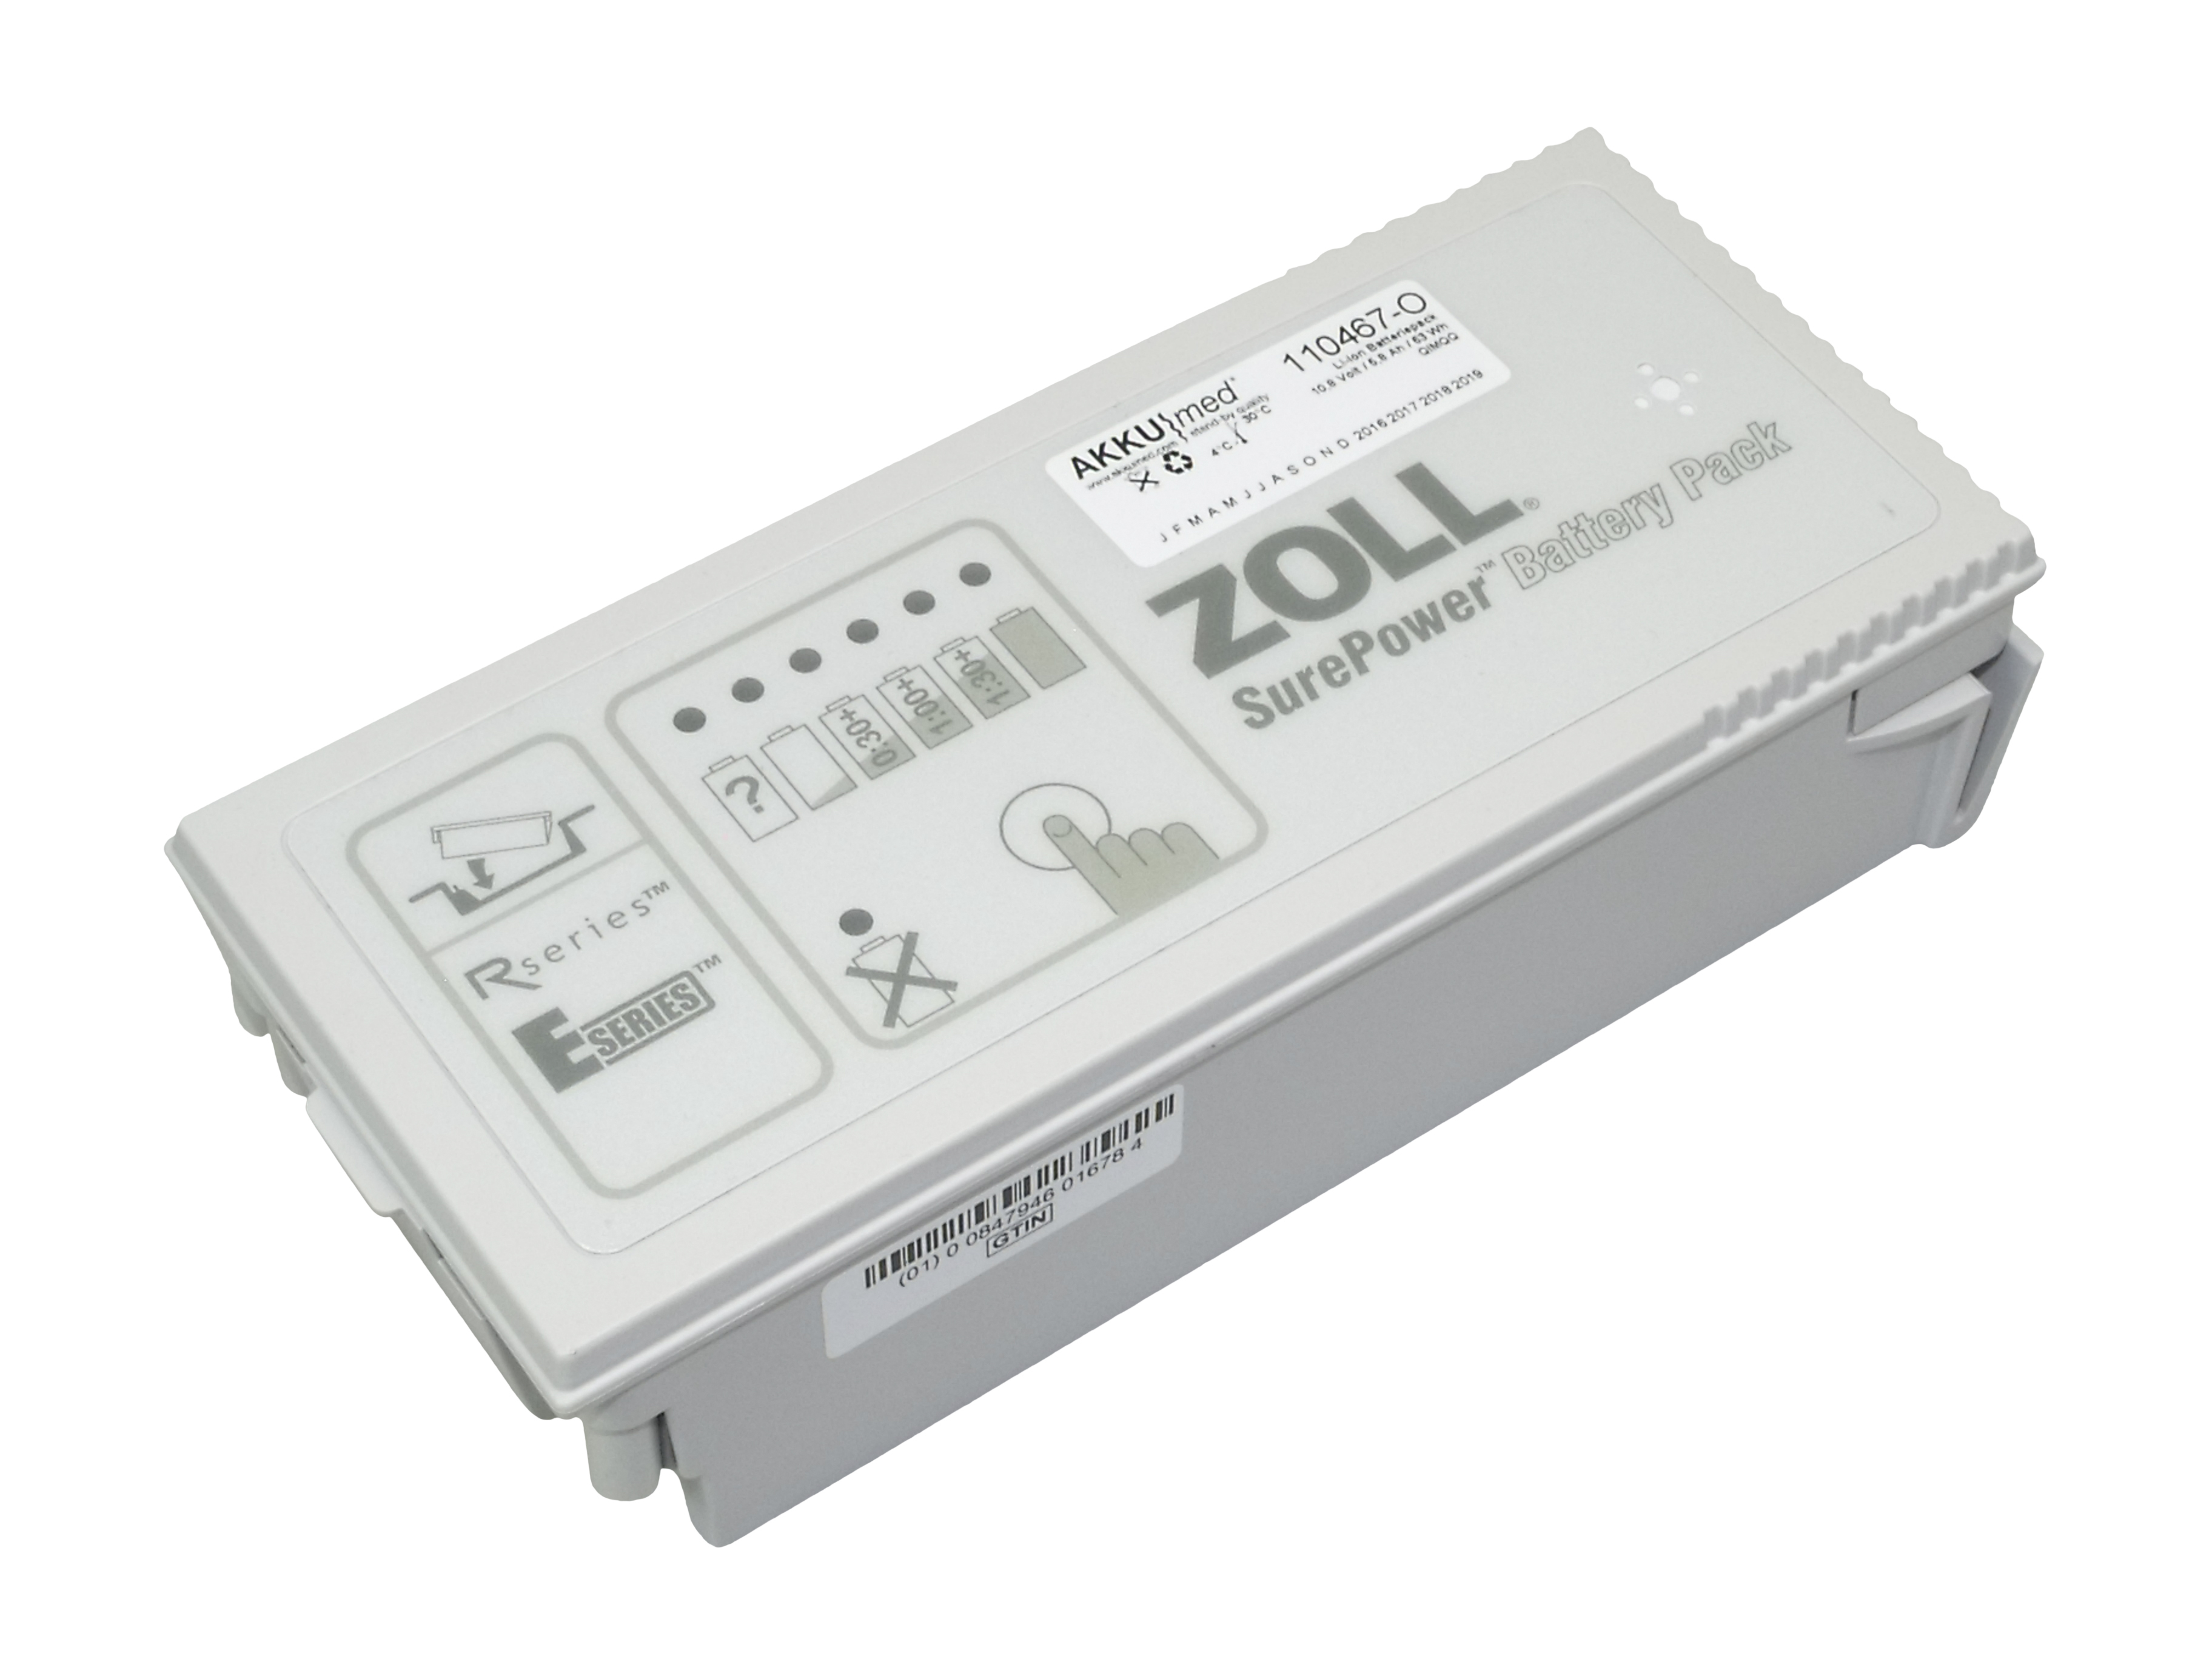 Original Li-Ion Akku Zoll Defibrillator AED Pro, E-Serie